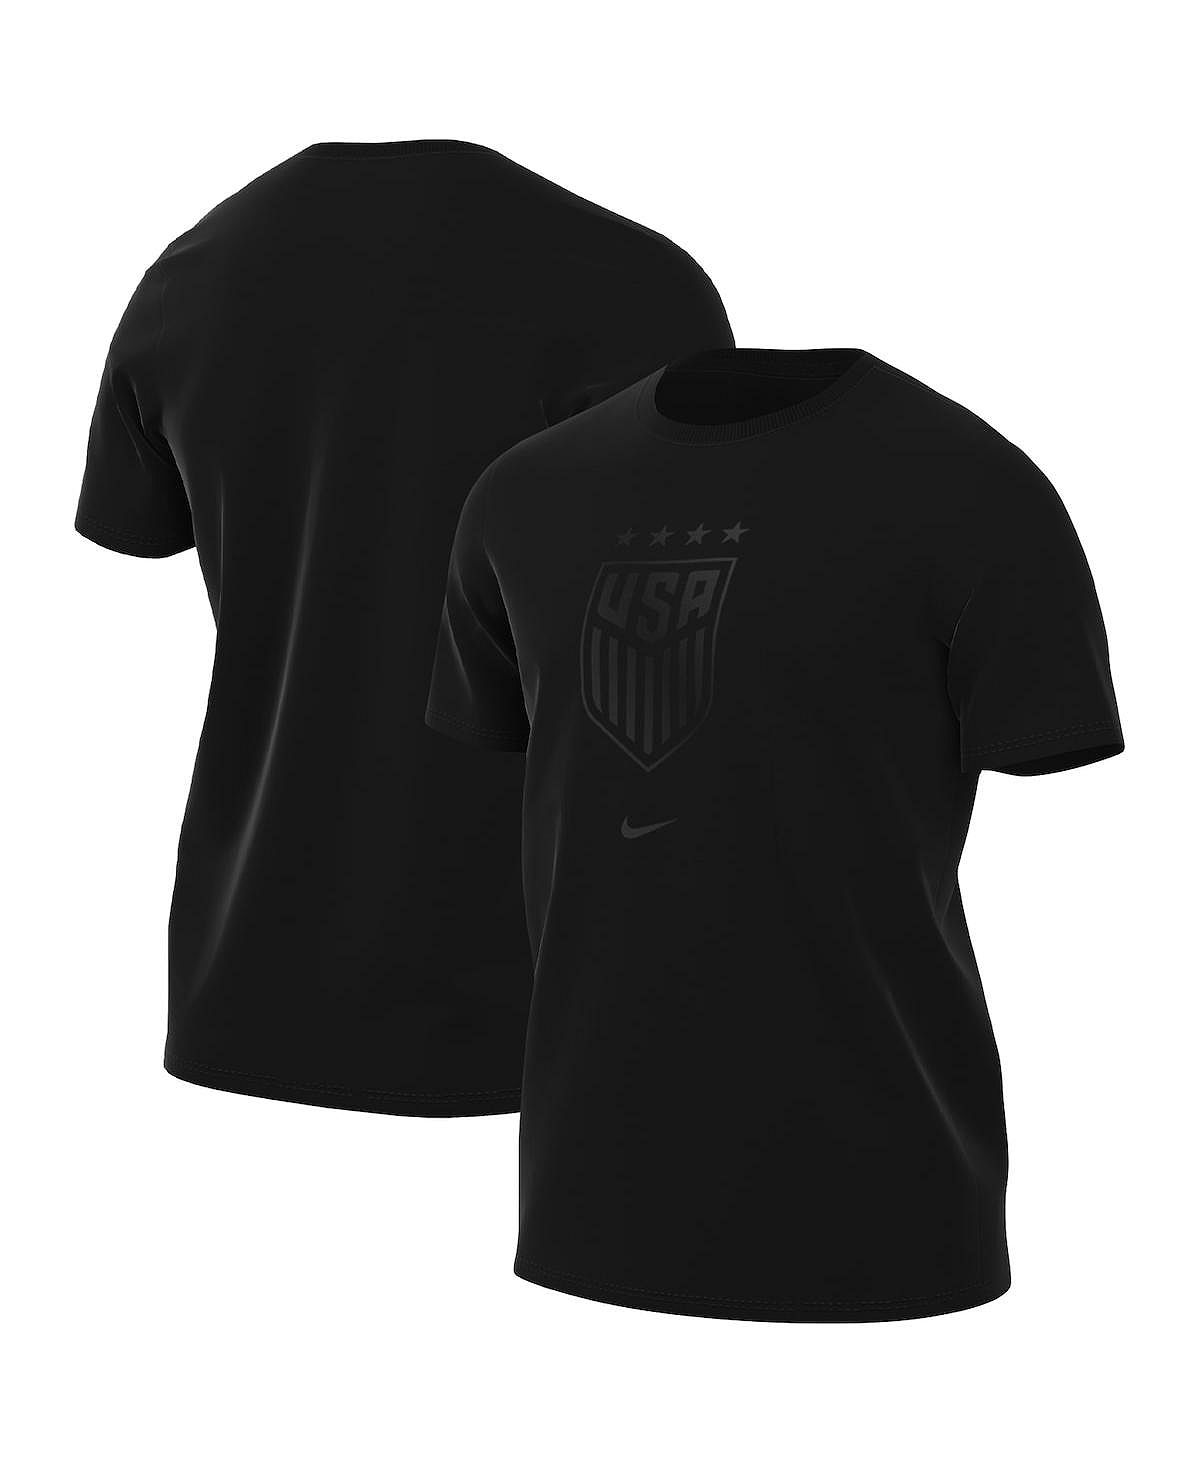 цена Мужская черная футболка с гербом USWNT Nike